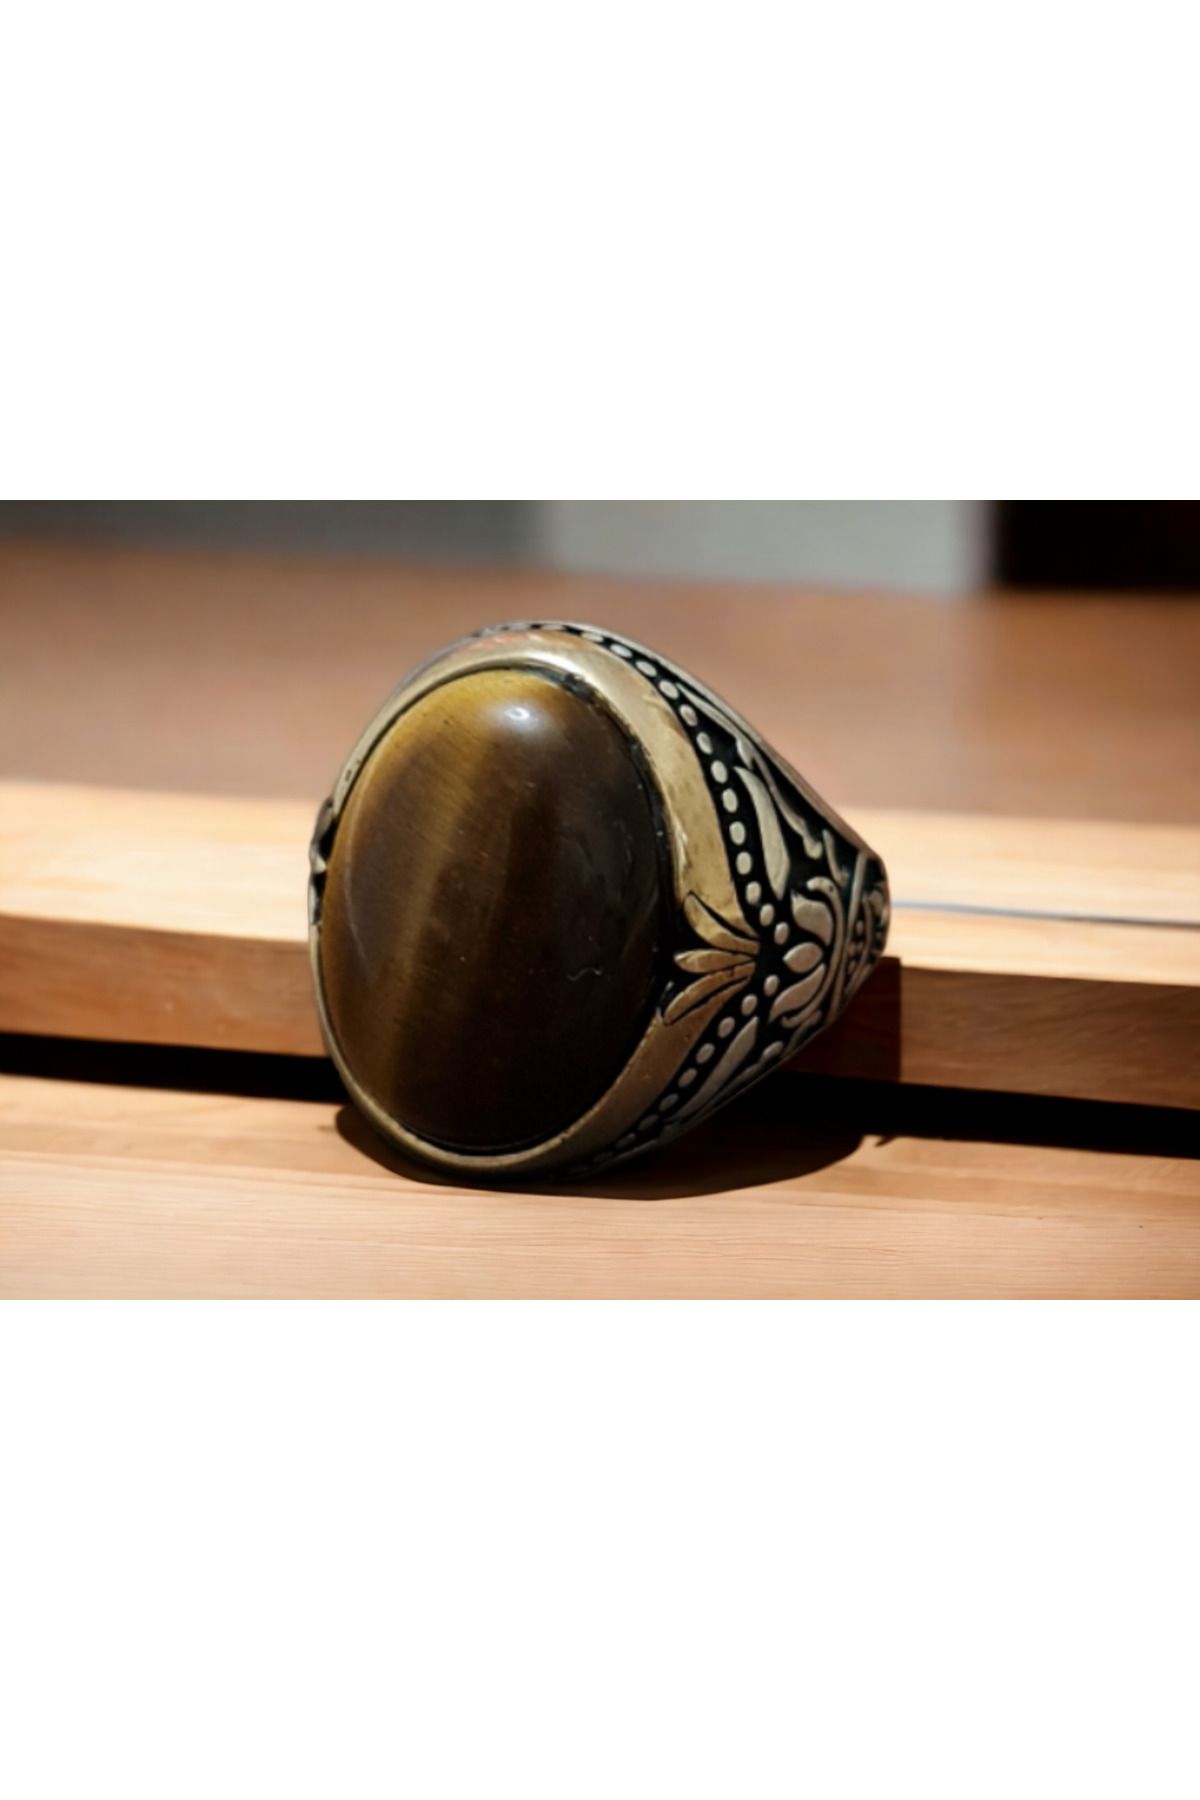 La'Vanti Designs Kaplan Gözü Doğal Taşlı Erzurum Kalem İşçilikli 925 Ayar Gümüş Erkek Yüzük Cesaret Yüzüğü